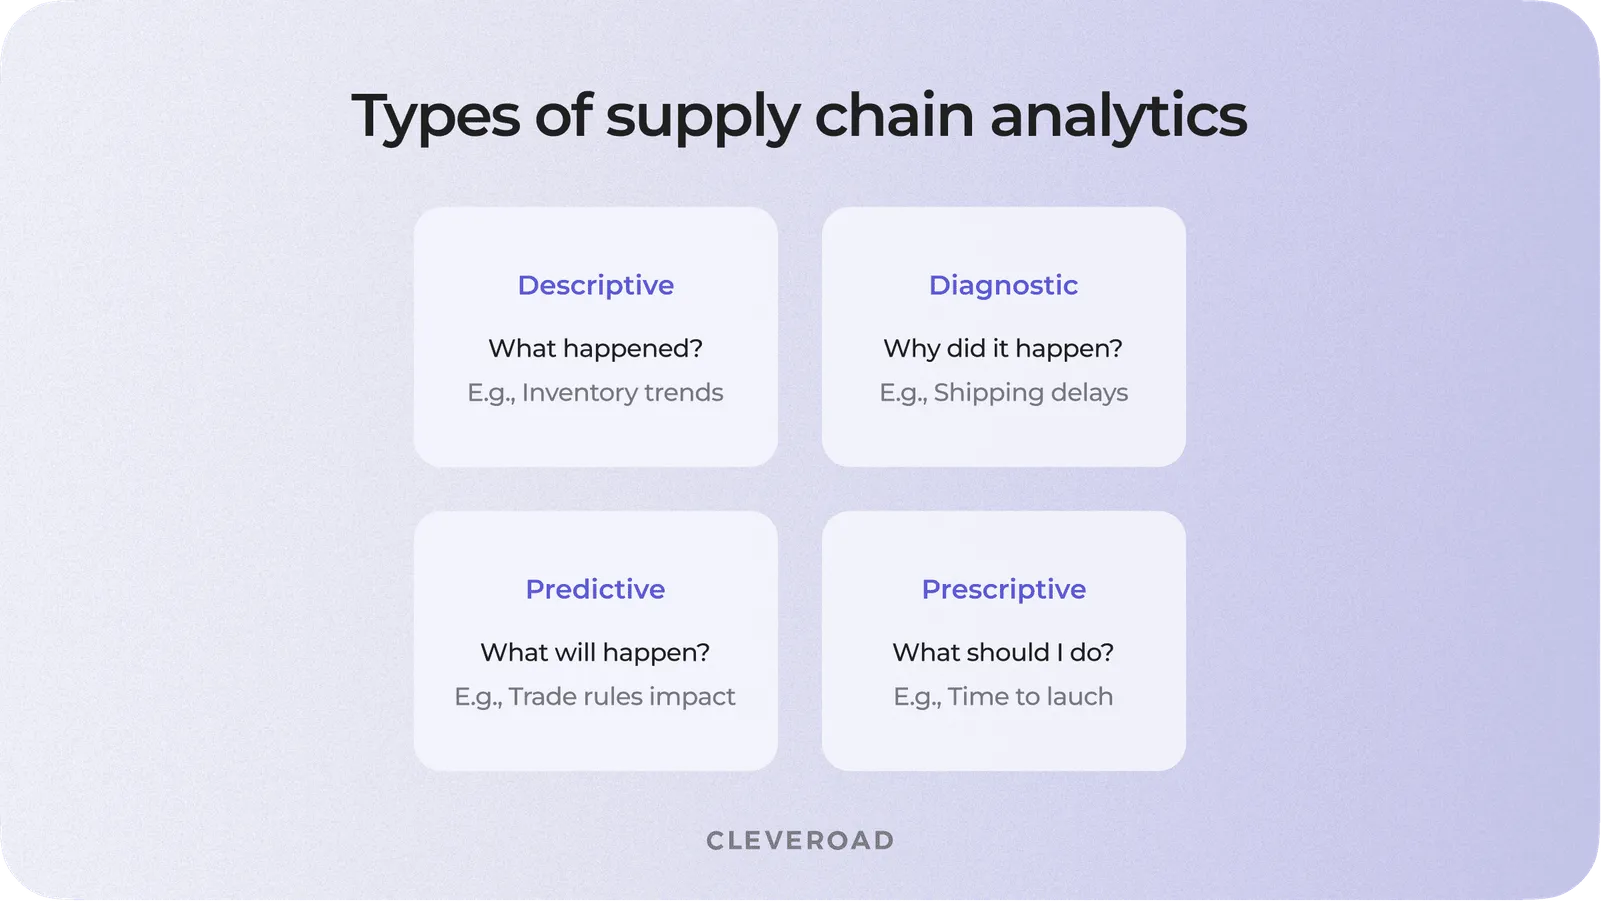 Types of supply chain analytics